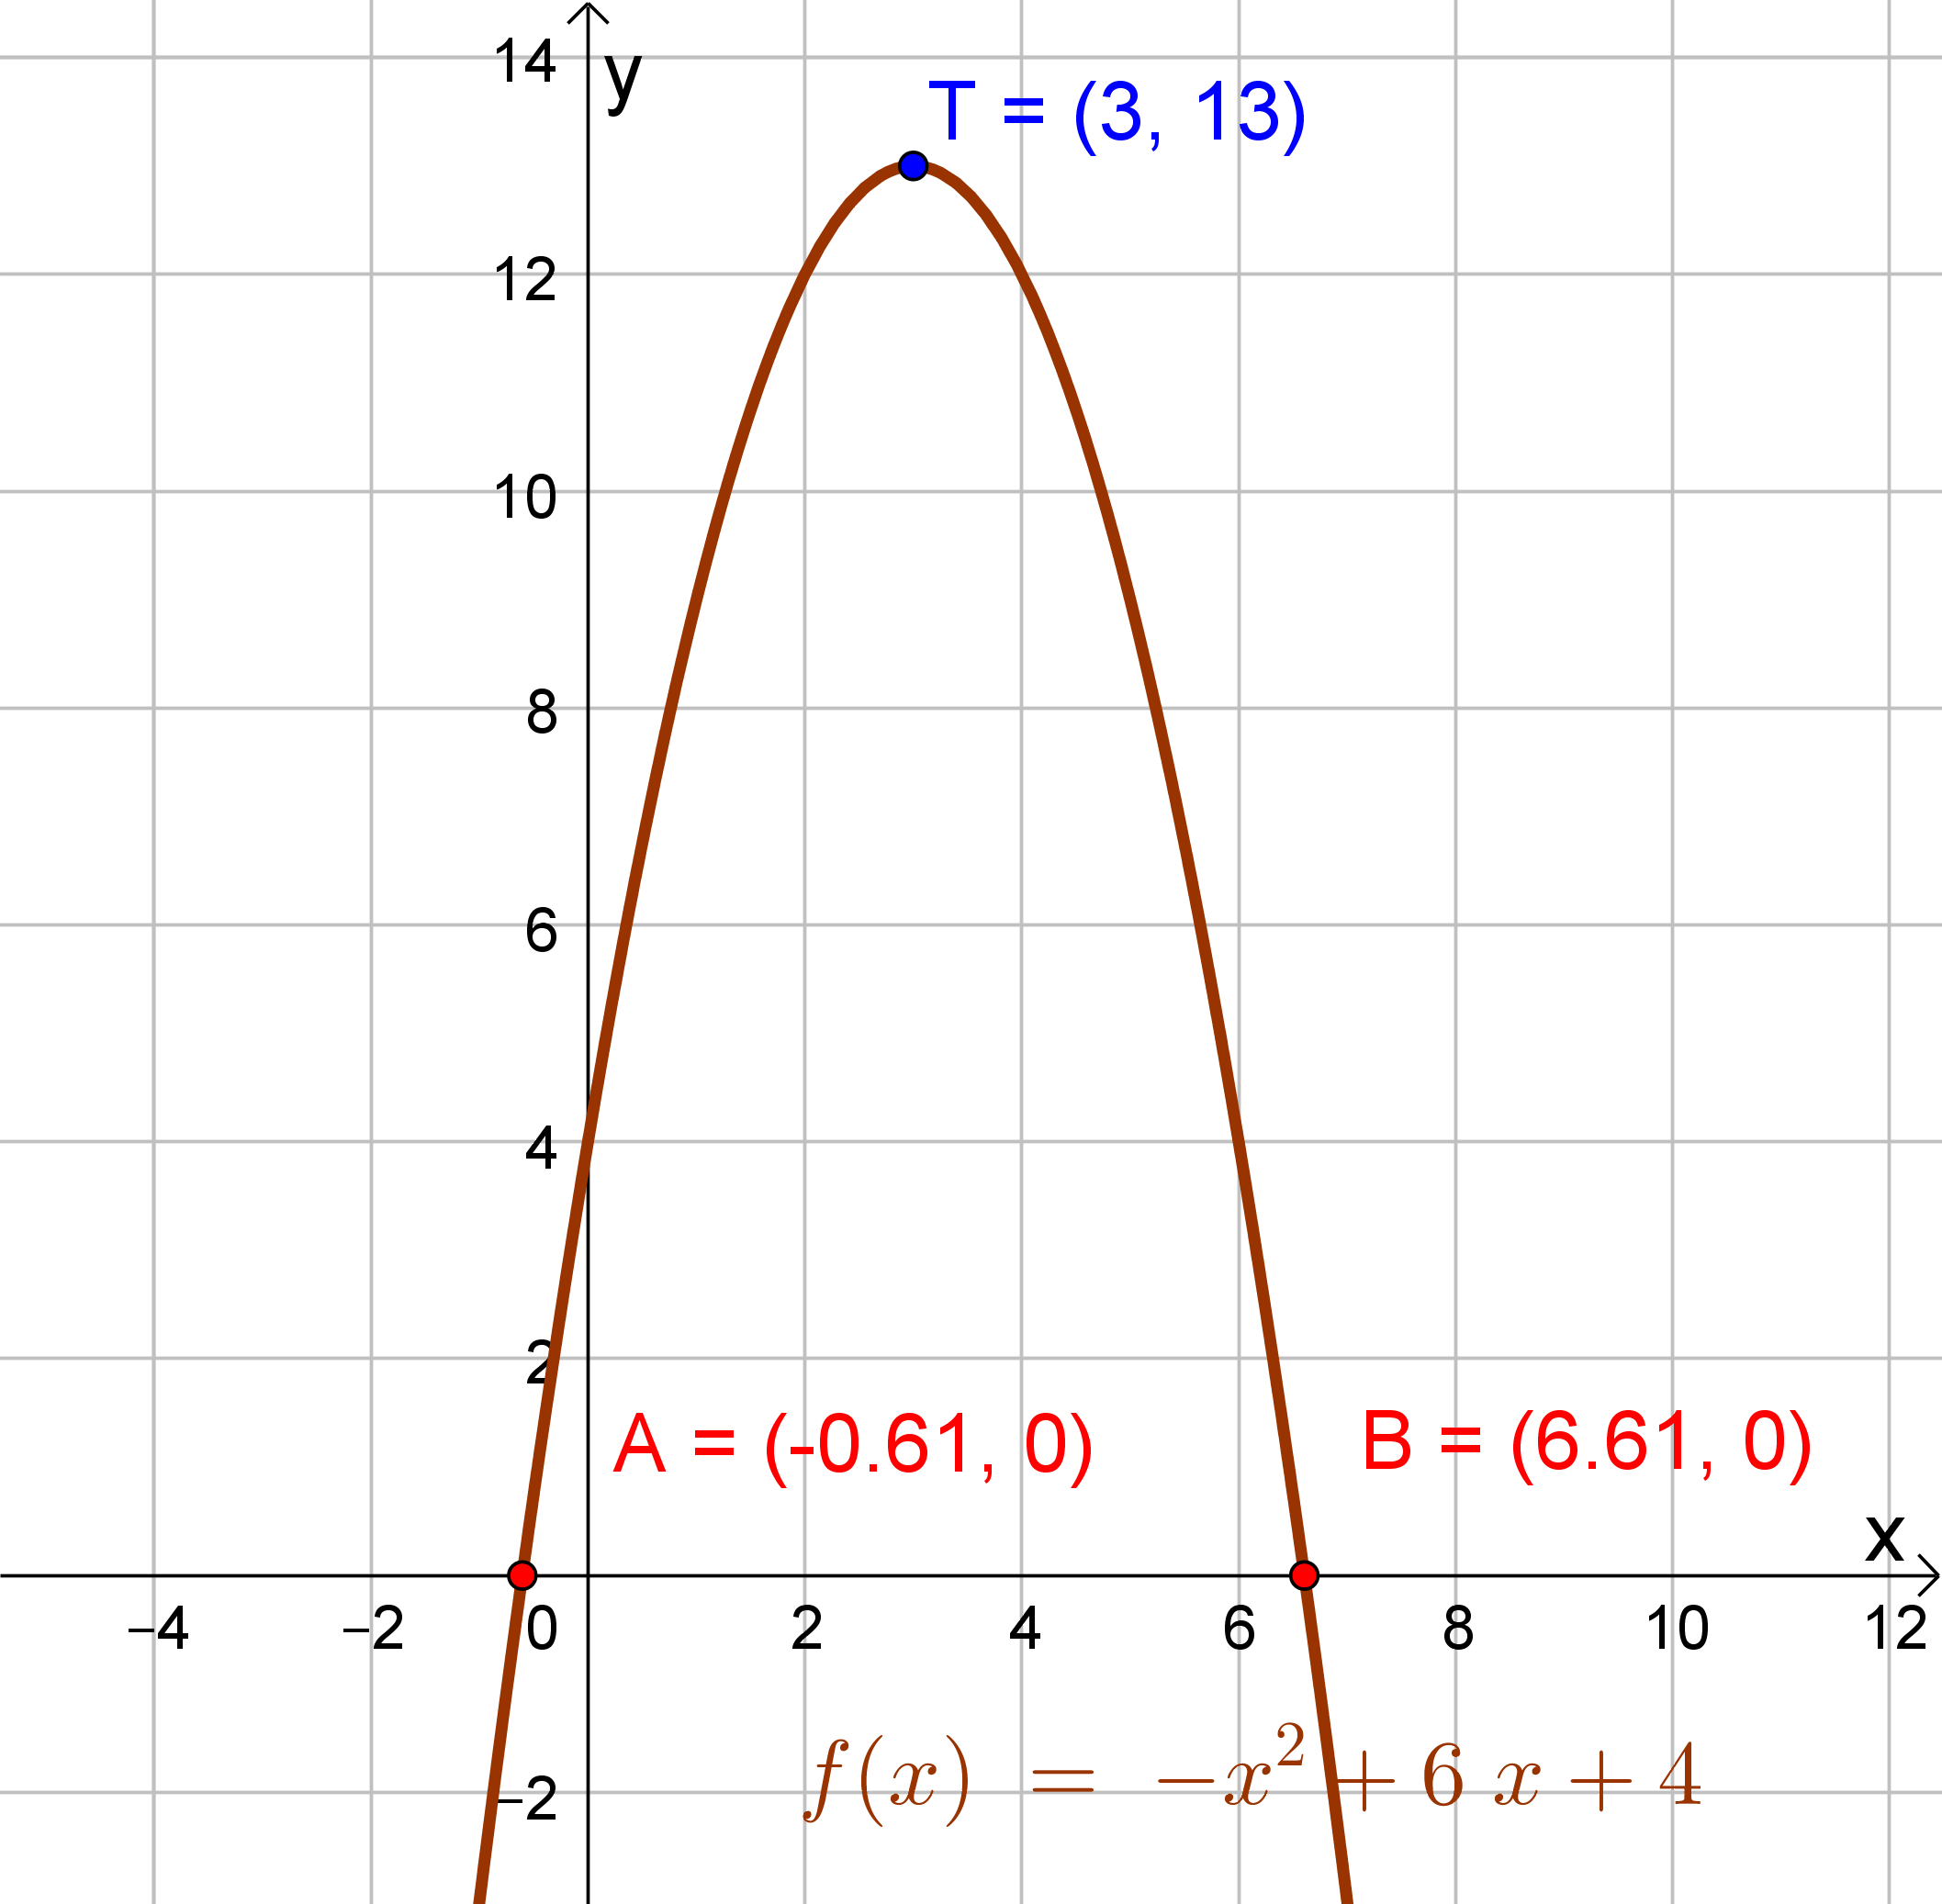 Graf funkcije koja je zadana u zadatku.